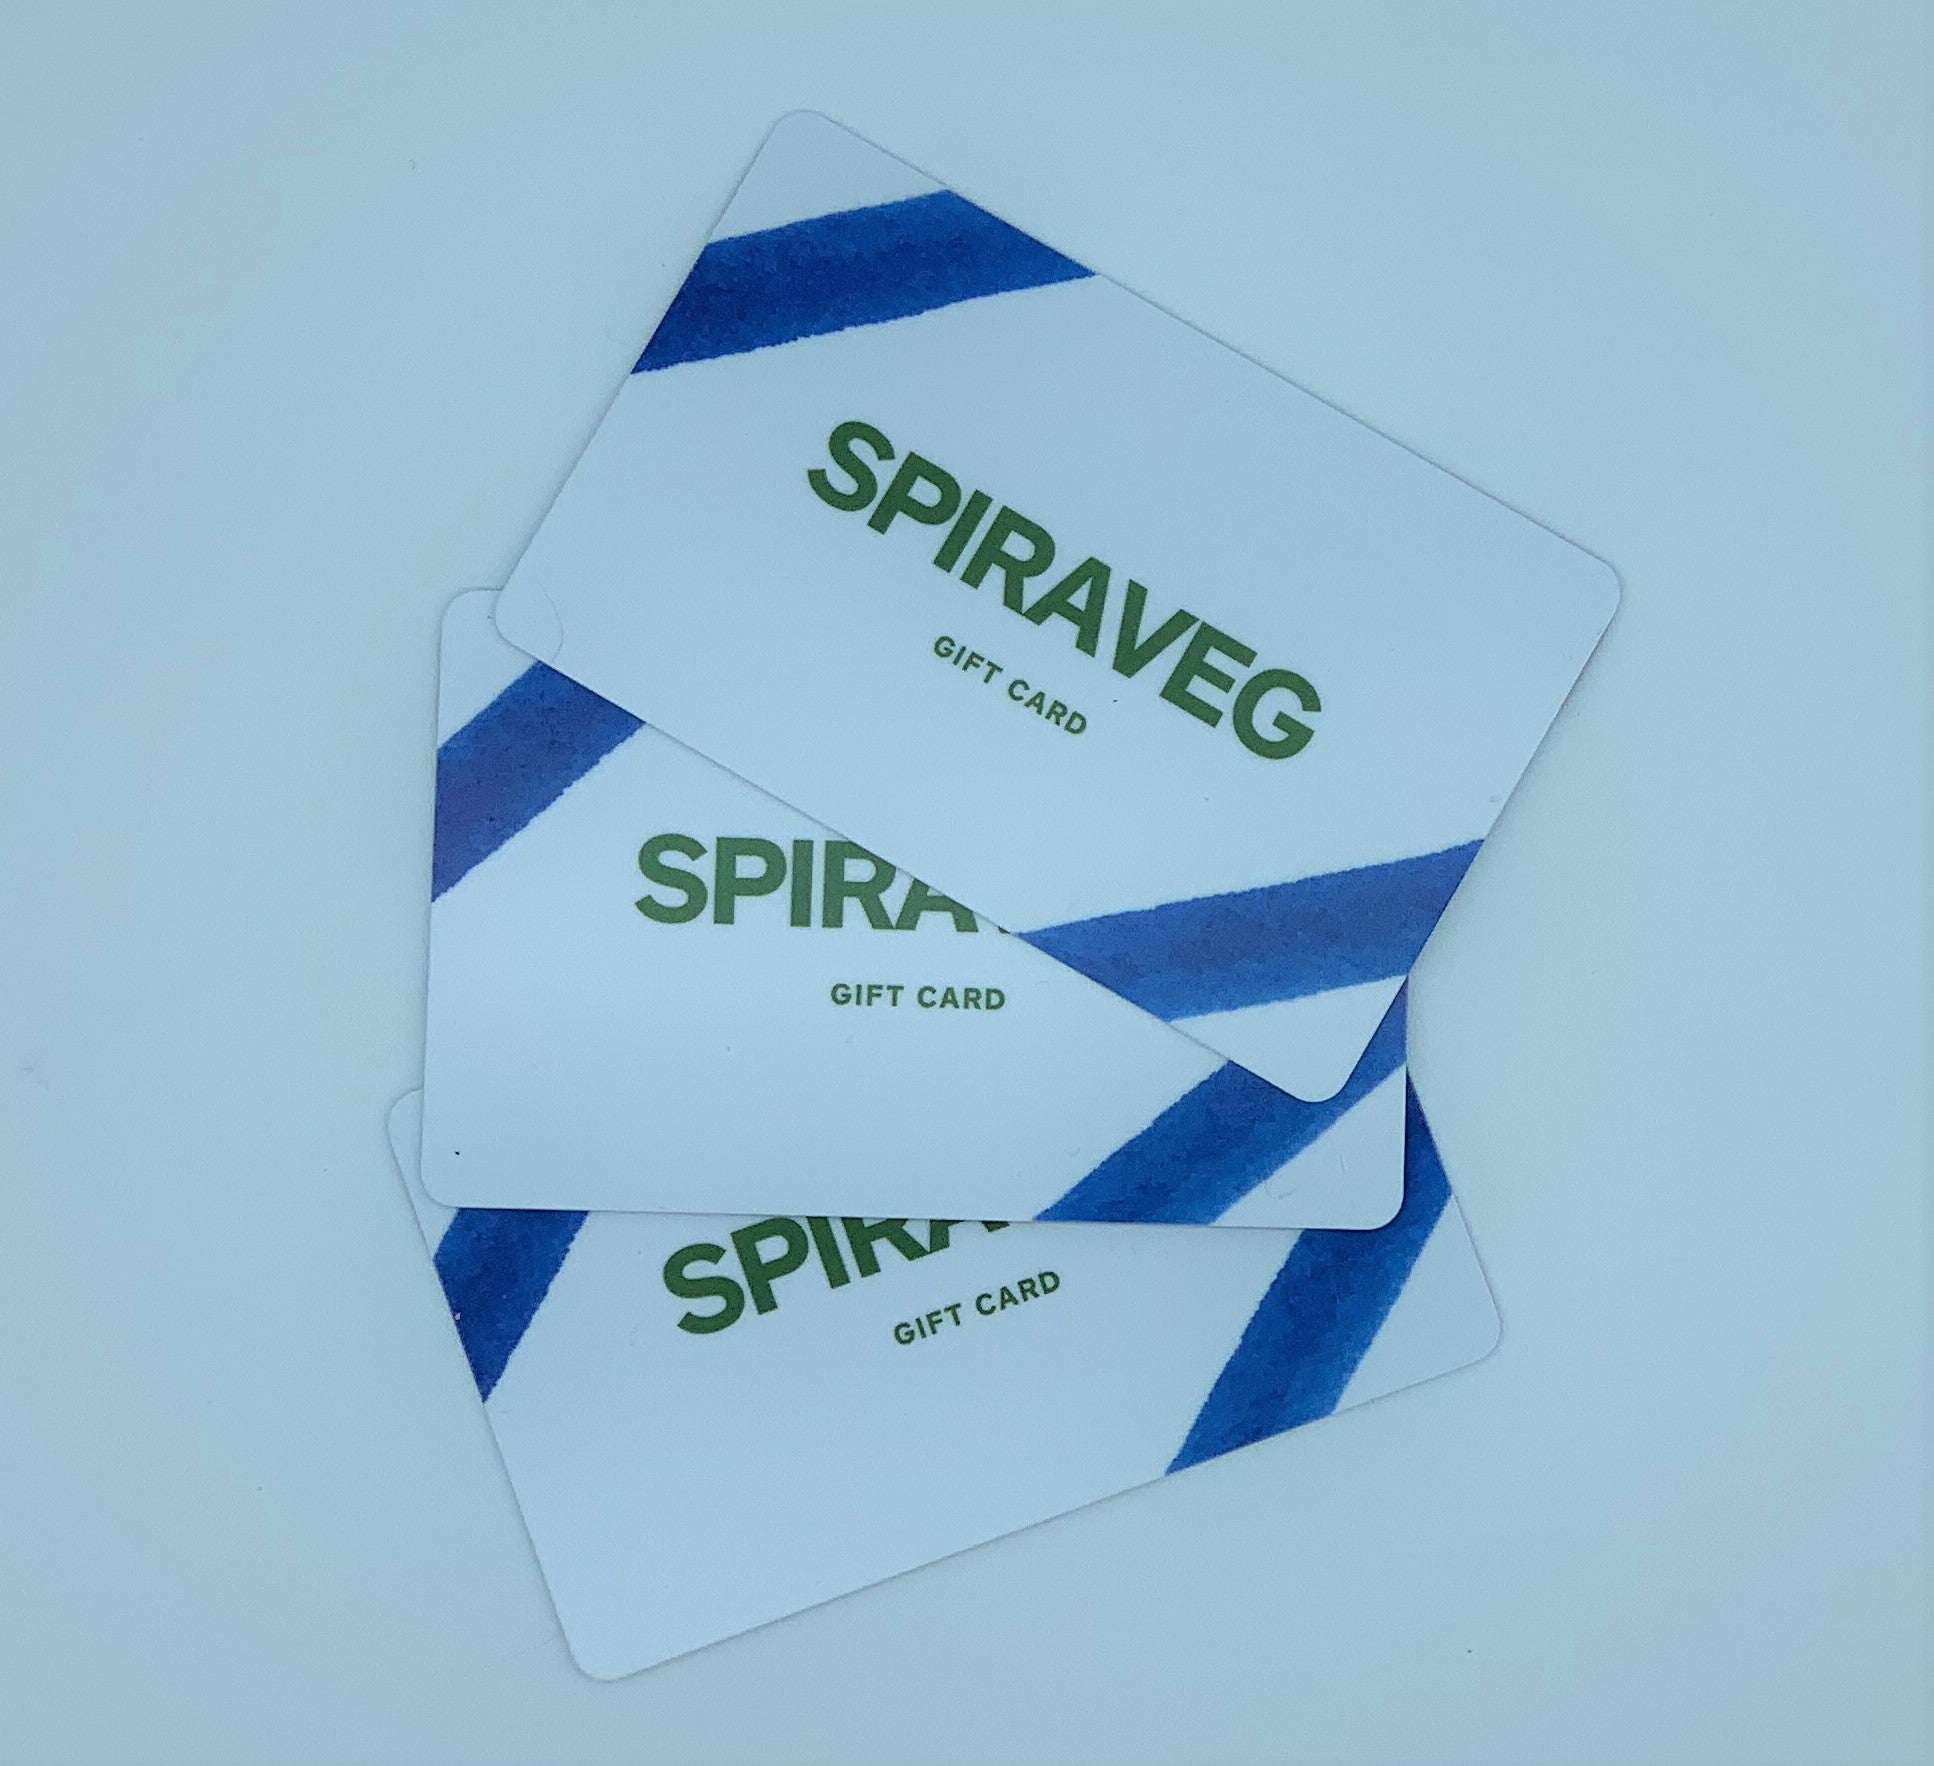 SpiraVeg Gift Card